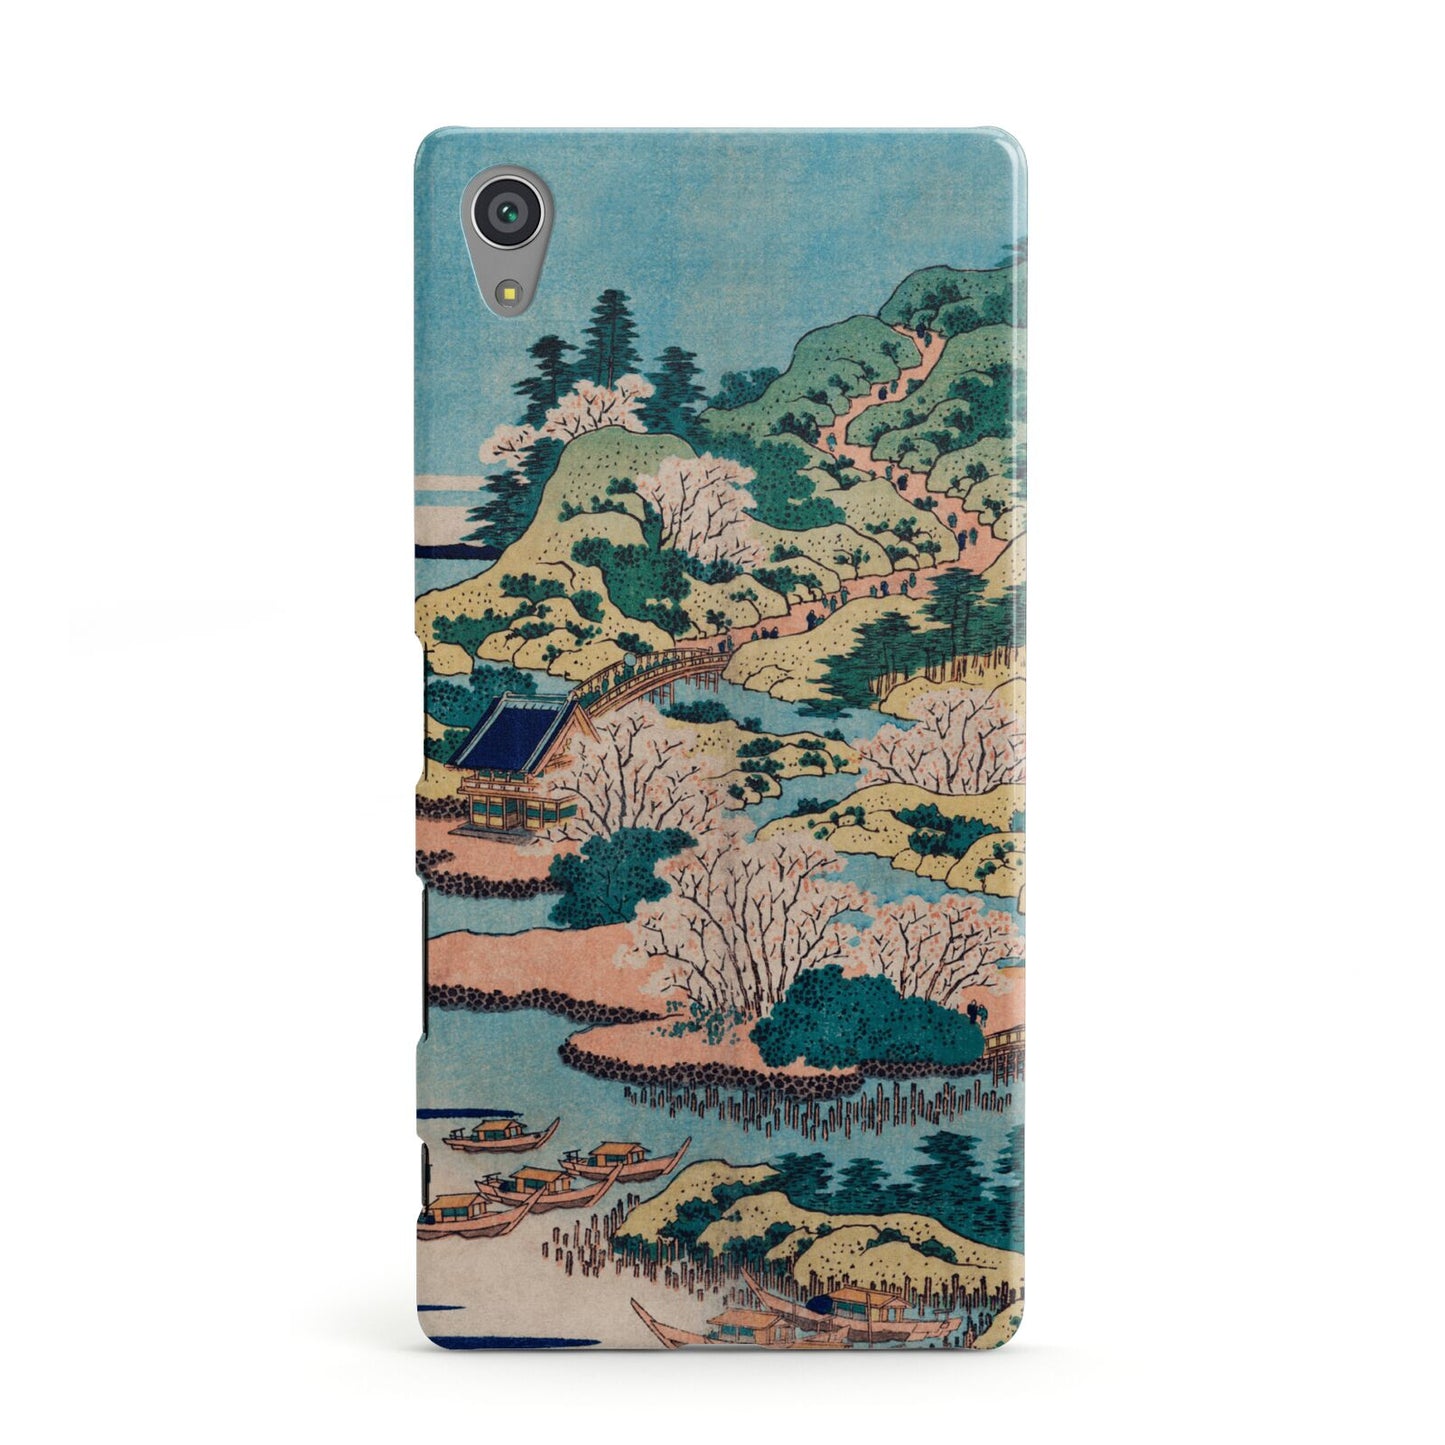 Coastal Community By Katsushika Hokusai Sony Xperia Case